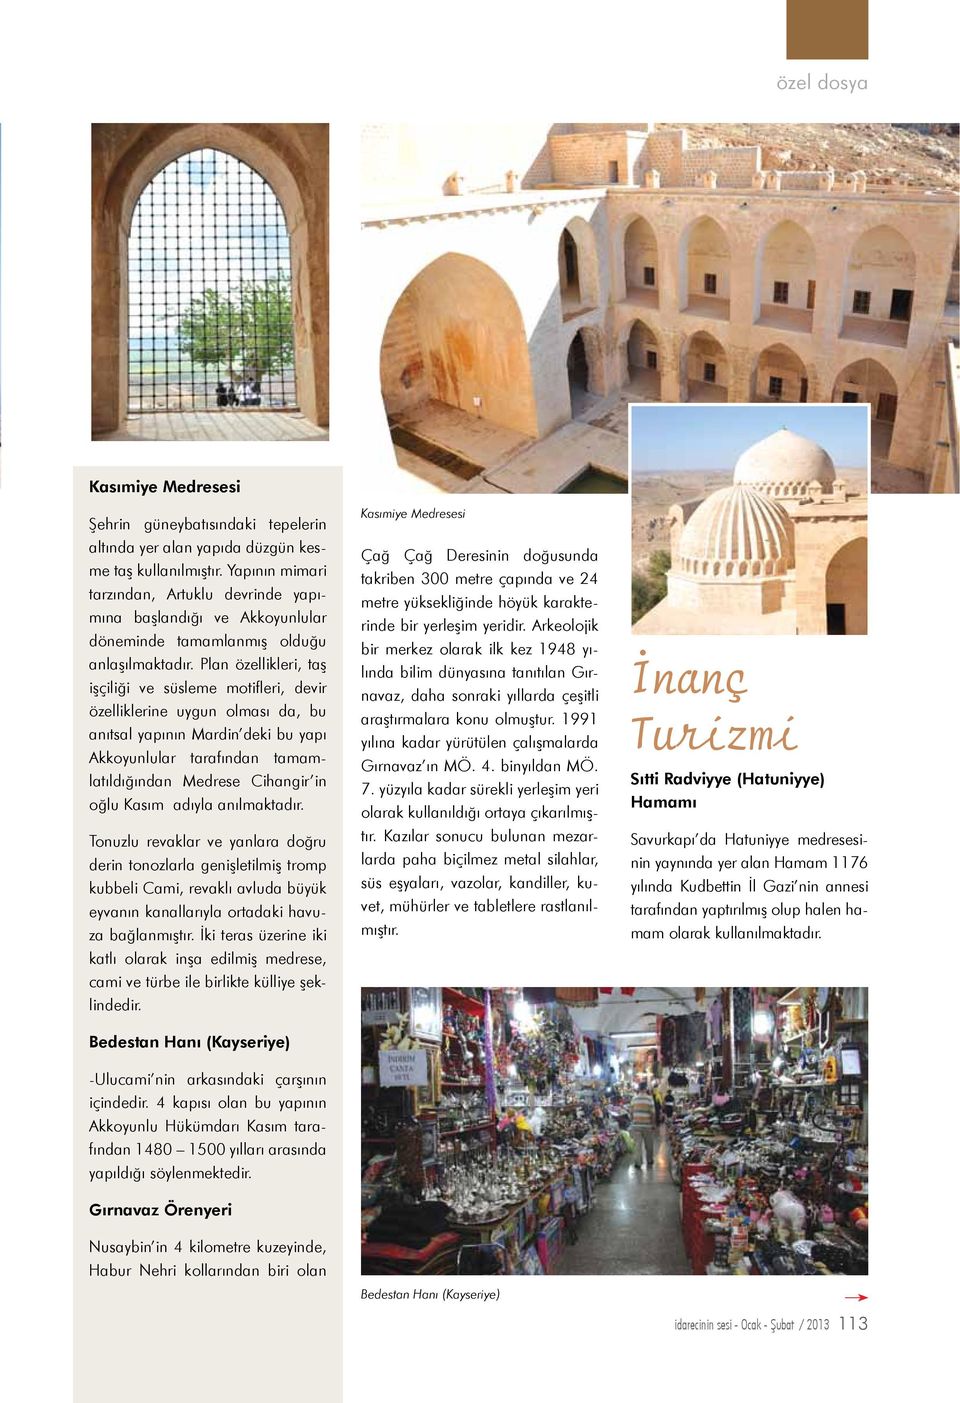 Plan özellikleri, taş işçiliği ve süsleme motifleri, devir özelliklerine uygun olması da, bu anıtsal yapının Mardin deki bu yapı Akkoyunlular tarafından tamamlatıldığından Medrese Cihangir in oğlu